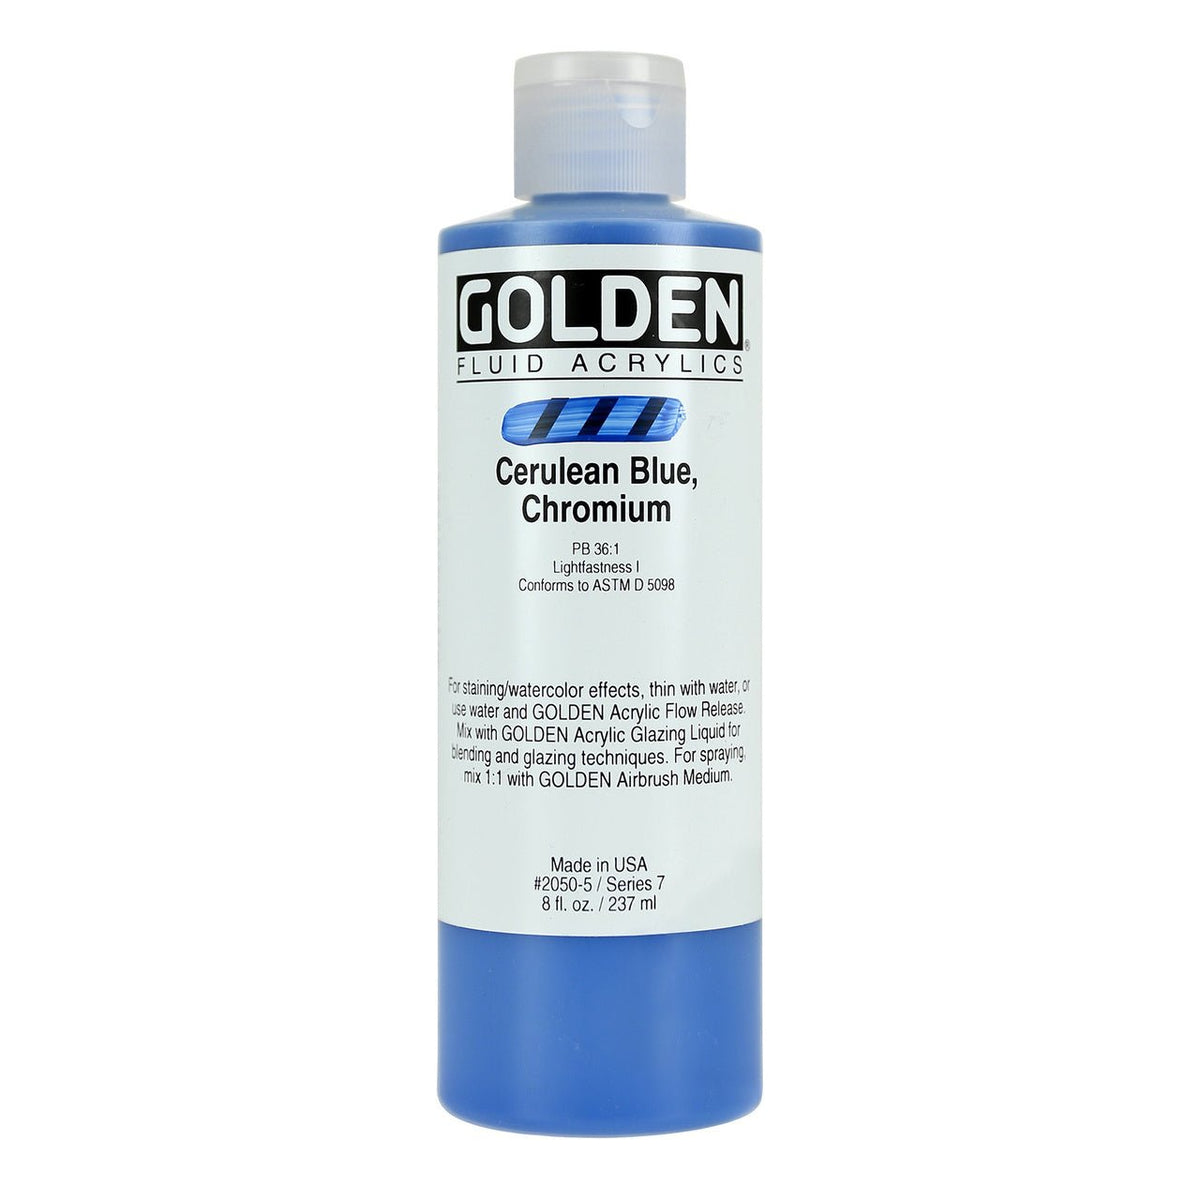 Golden Fluid Acrylic Cerulean Blue Chromium 8 oz - merriartist.com